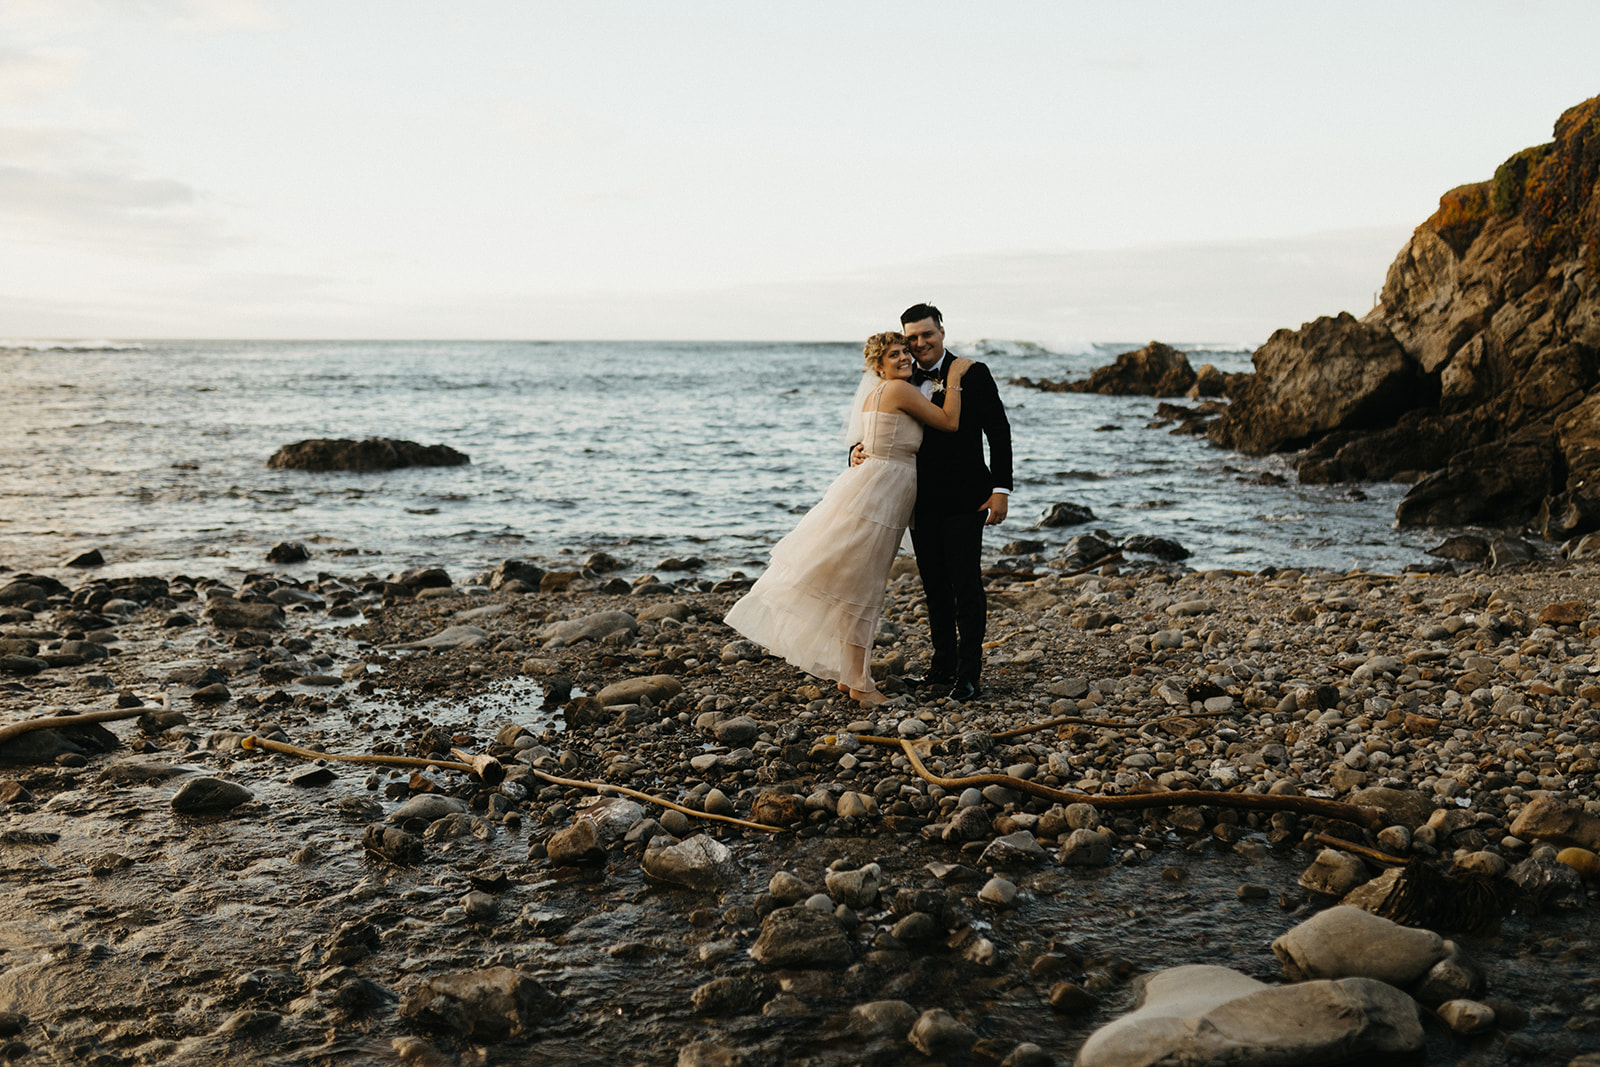 Mendocino Bride + Groom wedding photos